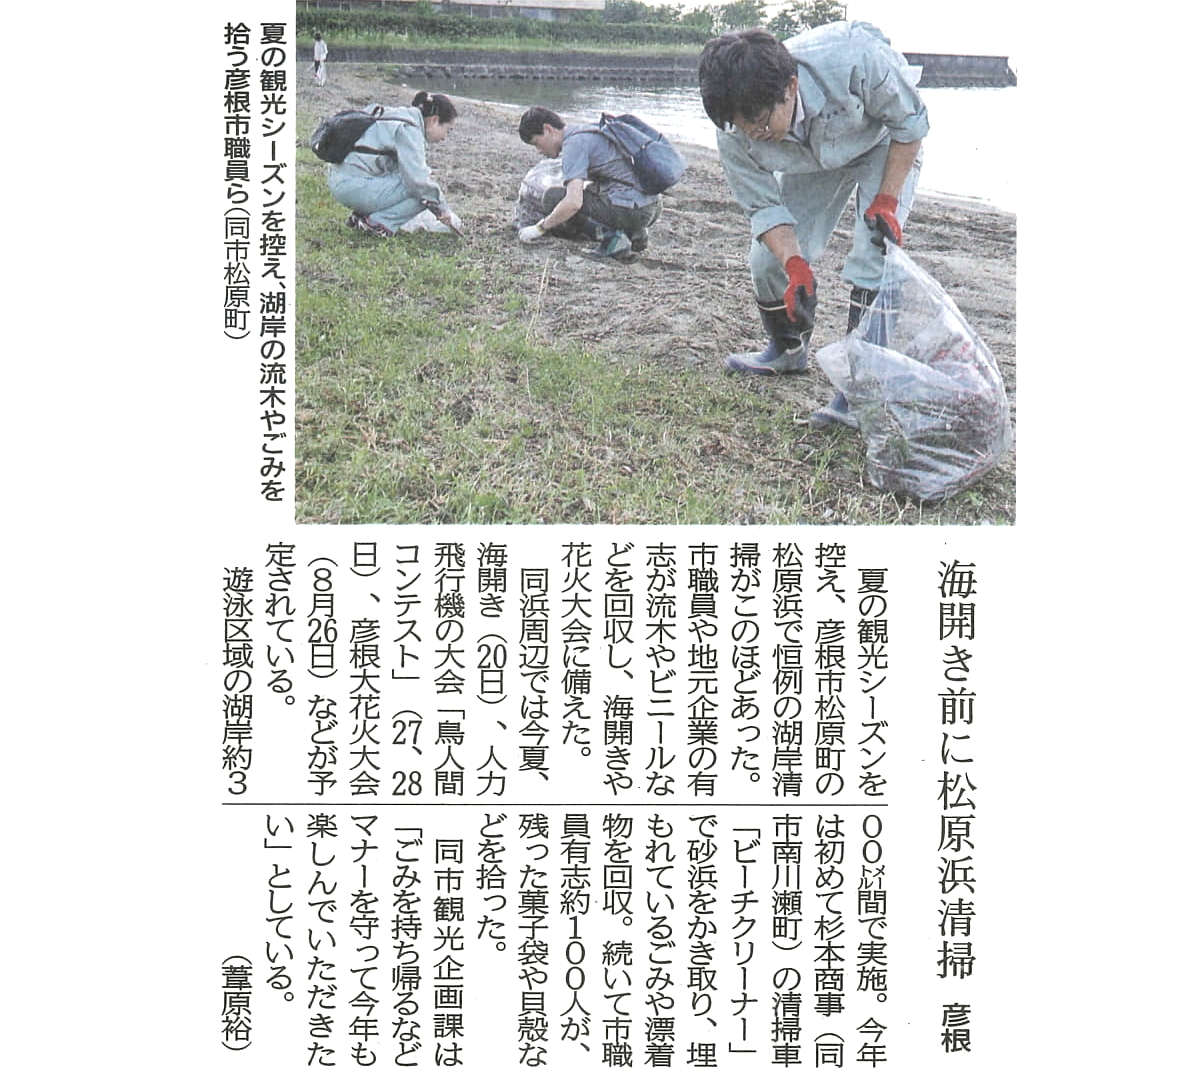 京都新聞(7/18付）に弊社の記事が掲載されました